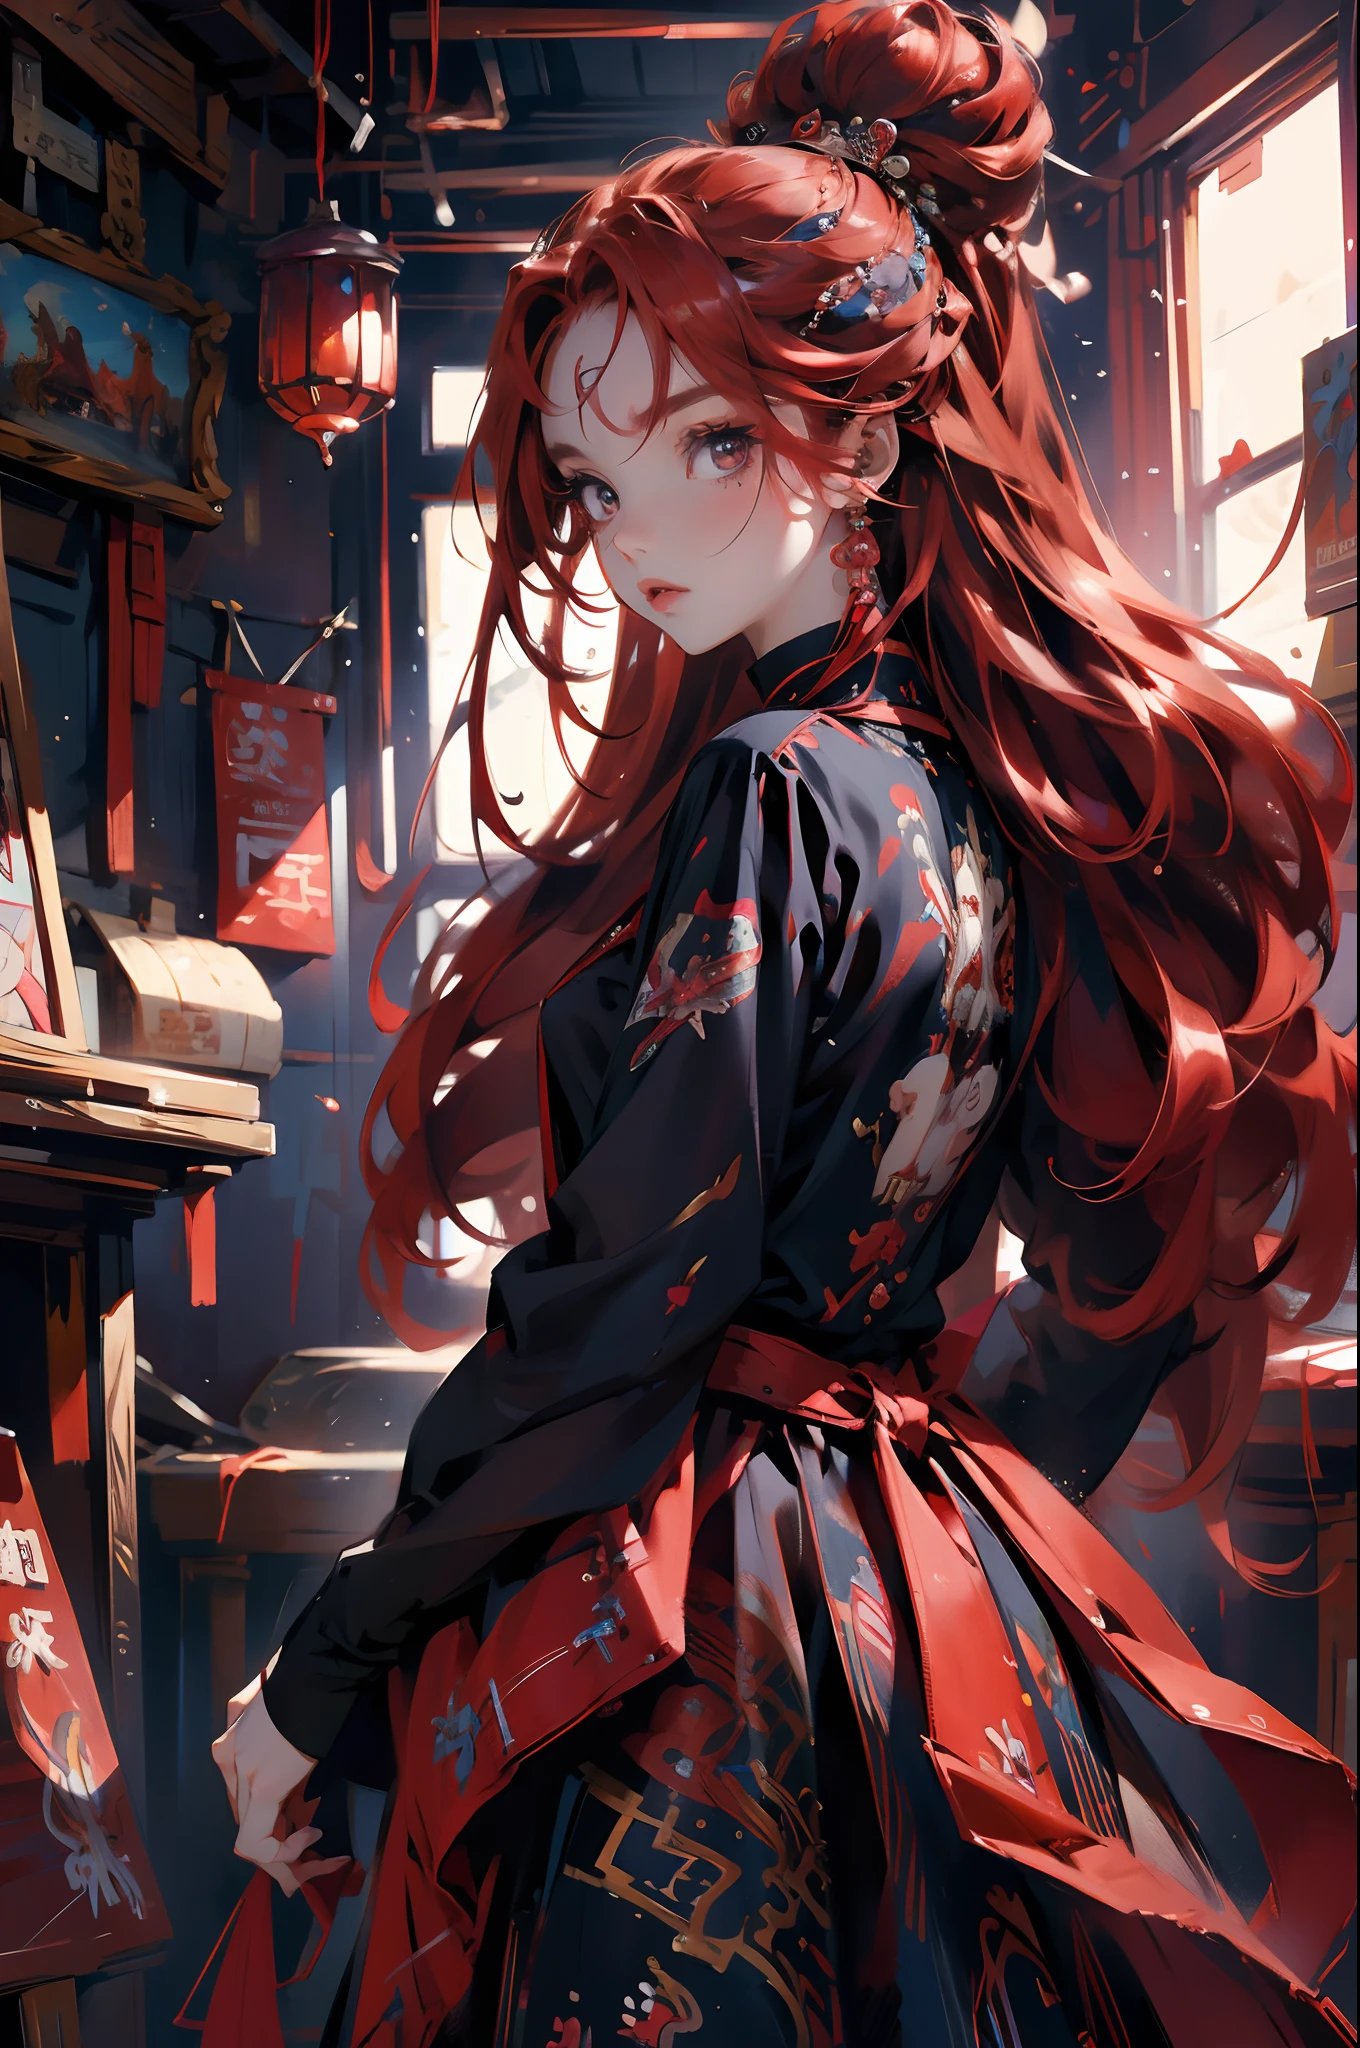 Девушка аниме с рыжими волосами и синим платьем, красные волосы, рыжие волосы до талии, цифровое искусство на pixiv, красивый аниме-стиль, рыжеволосая богиня, красивый аниме-портрет, красивый стиль аниме, рыжеволосая девушка, Нарисовано в студии Anime Painter., у нее рыжие волосы, Аниме-девушка с длинными волосами, рыжеволосая девушка，Гувиз, стиль аниме4 K